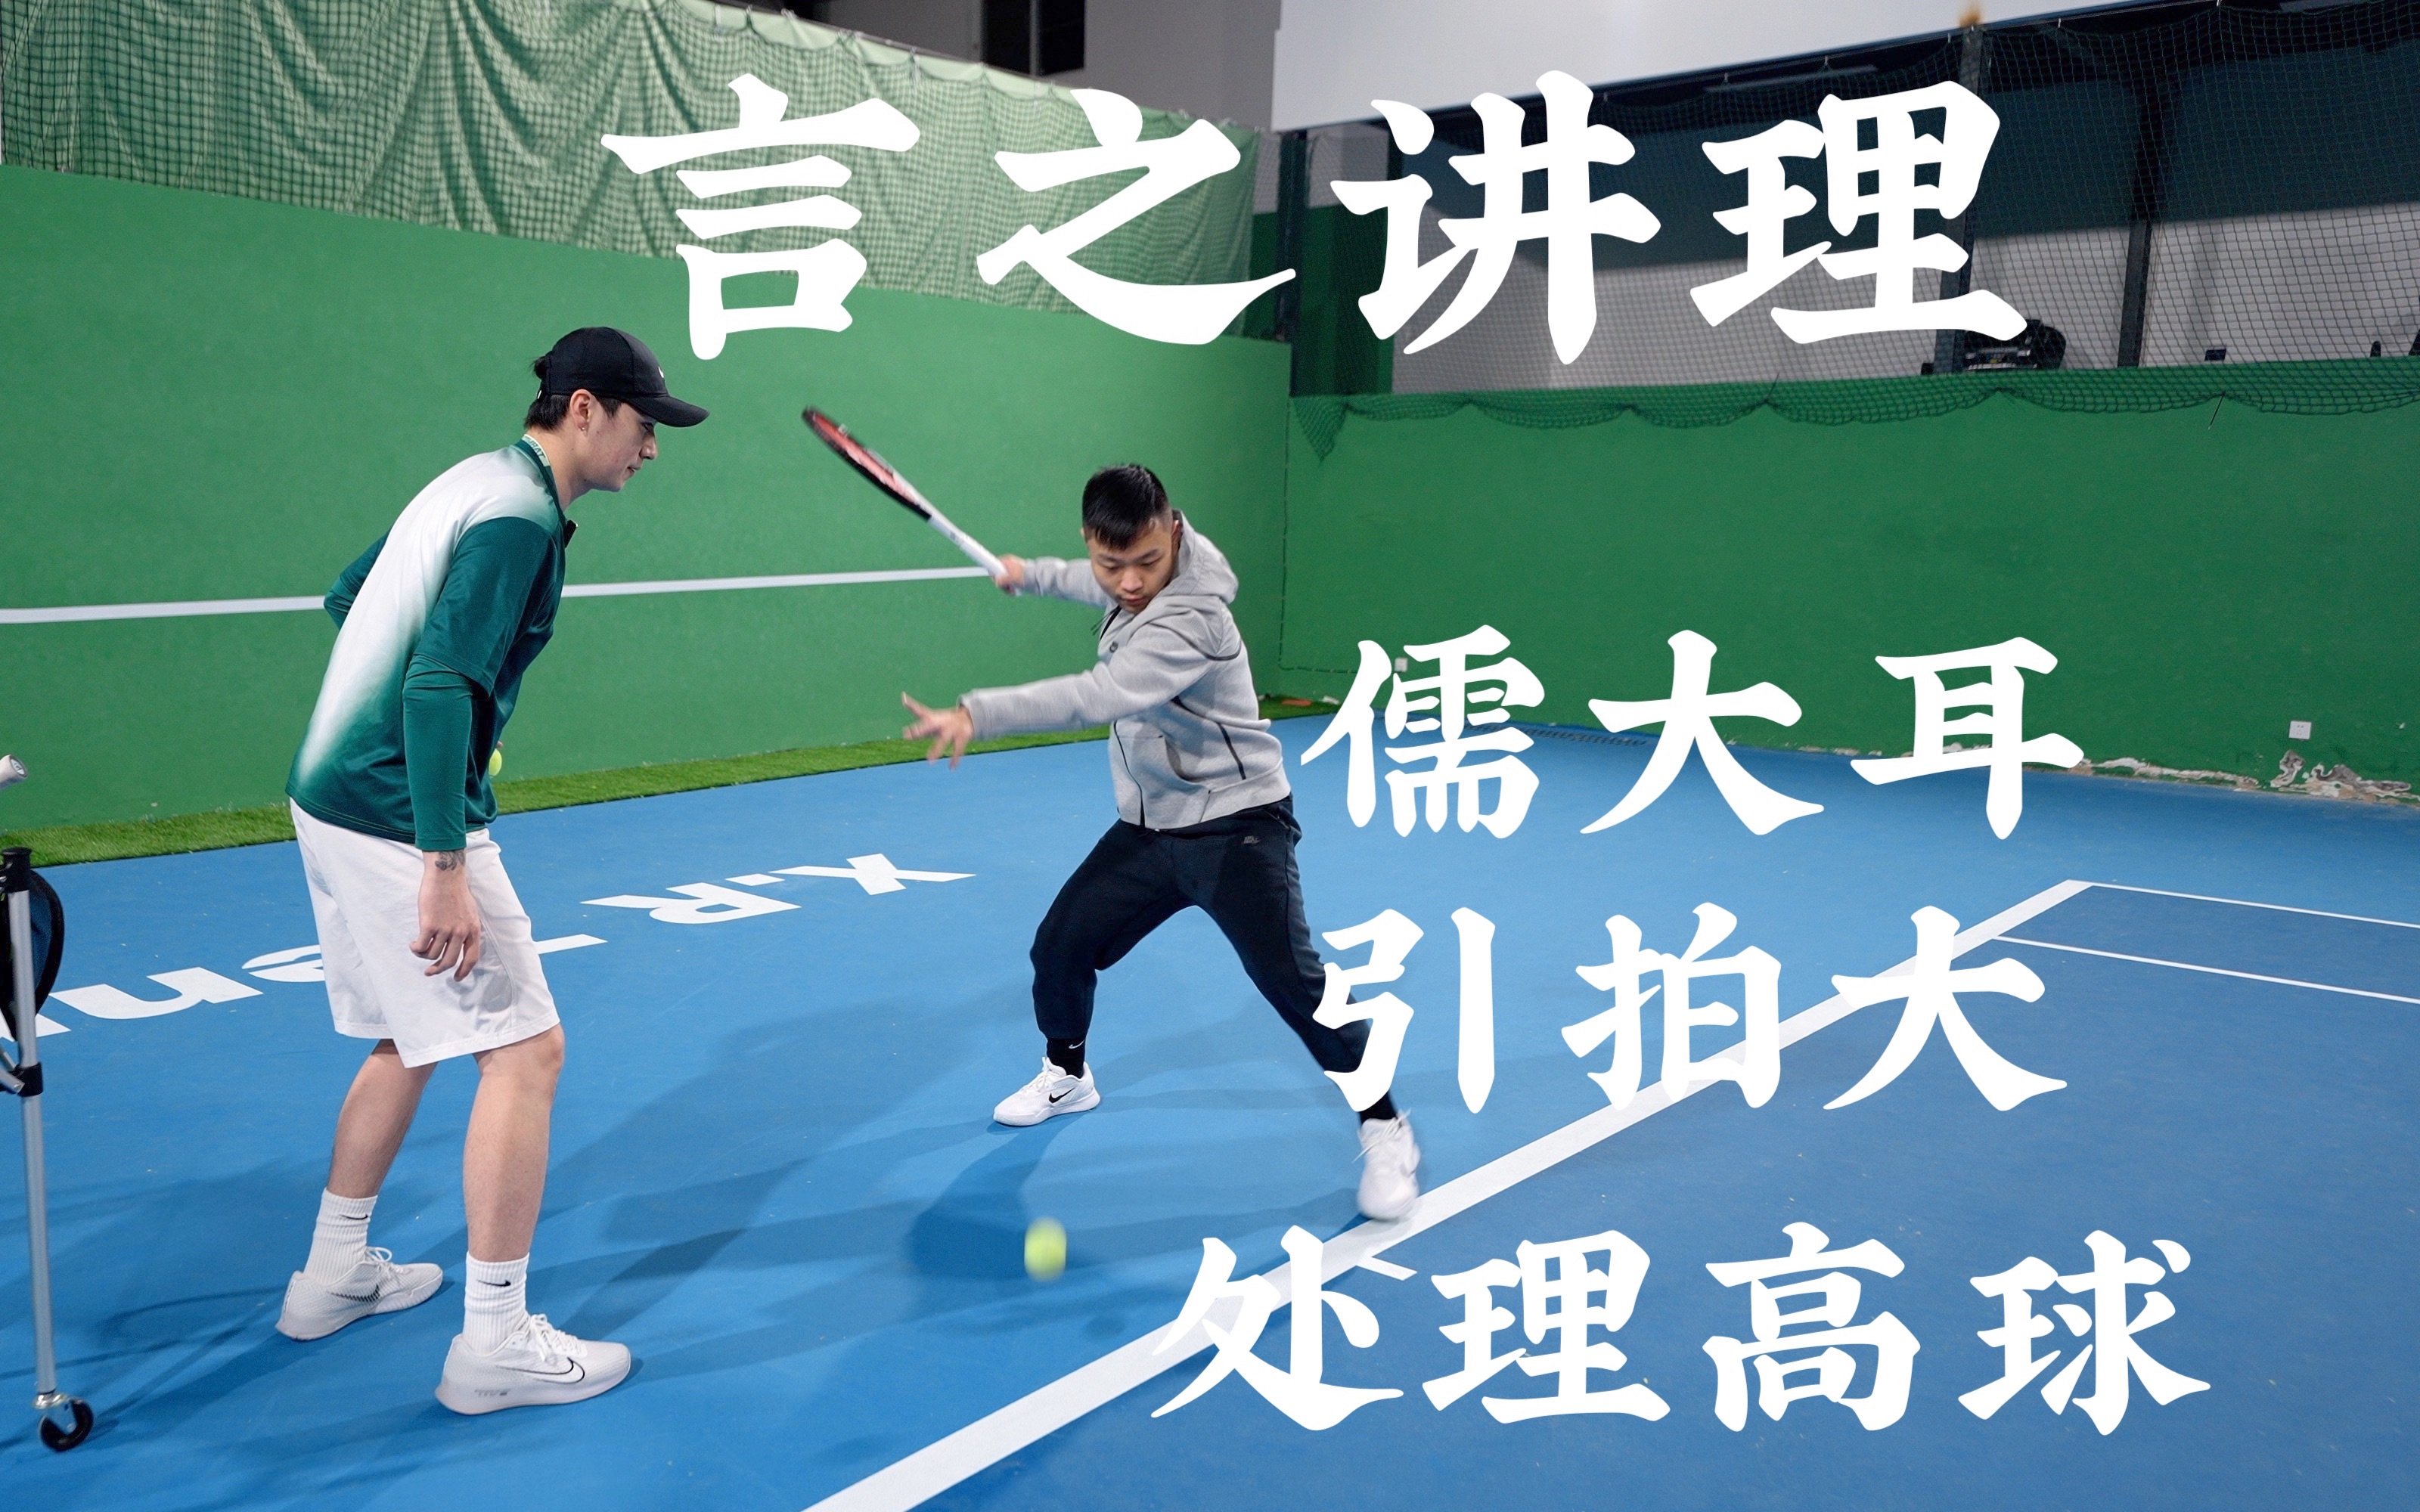 【网球教学-言之讲理】5.0大佬教网球爱好者怎样解决正手引拍大&高球和浅球